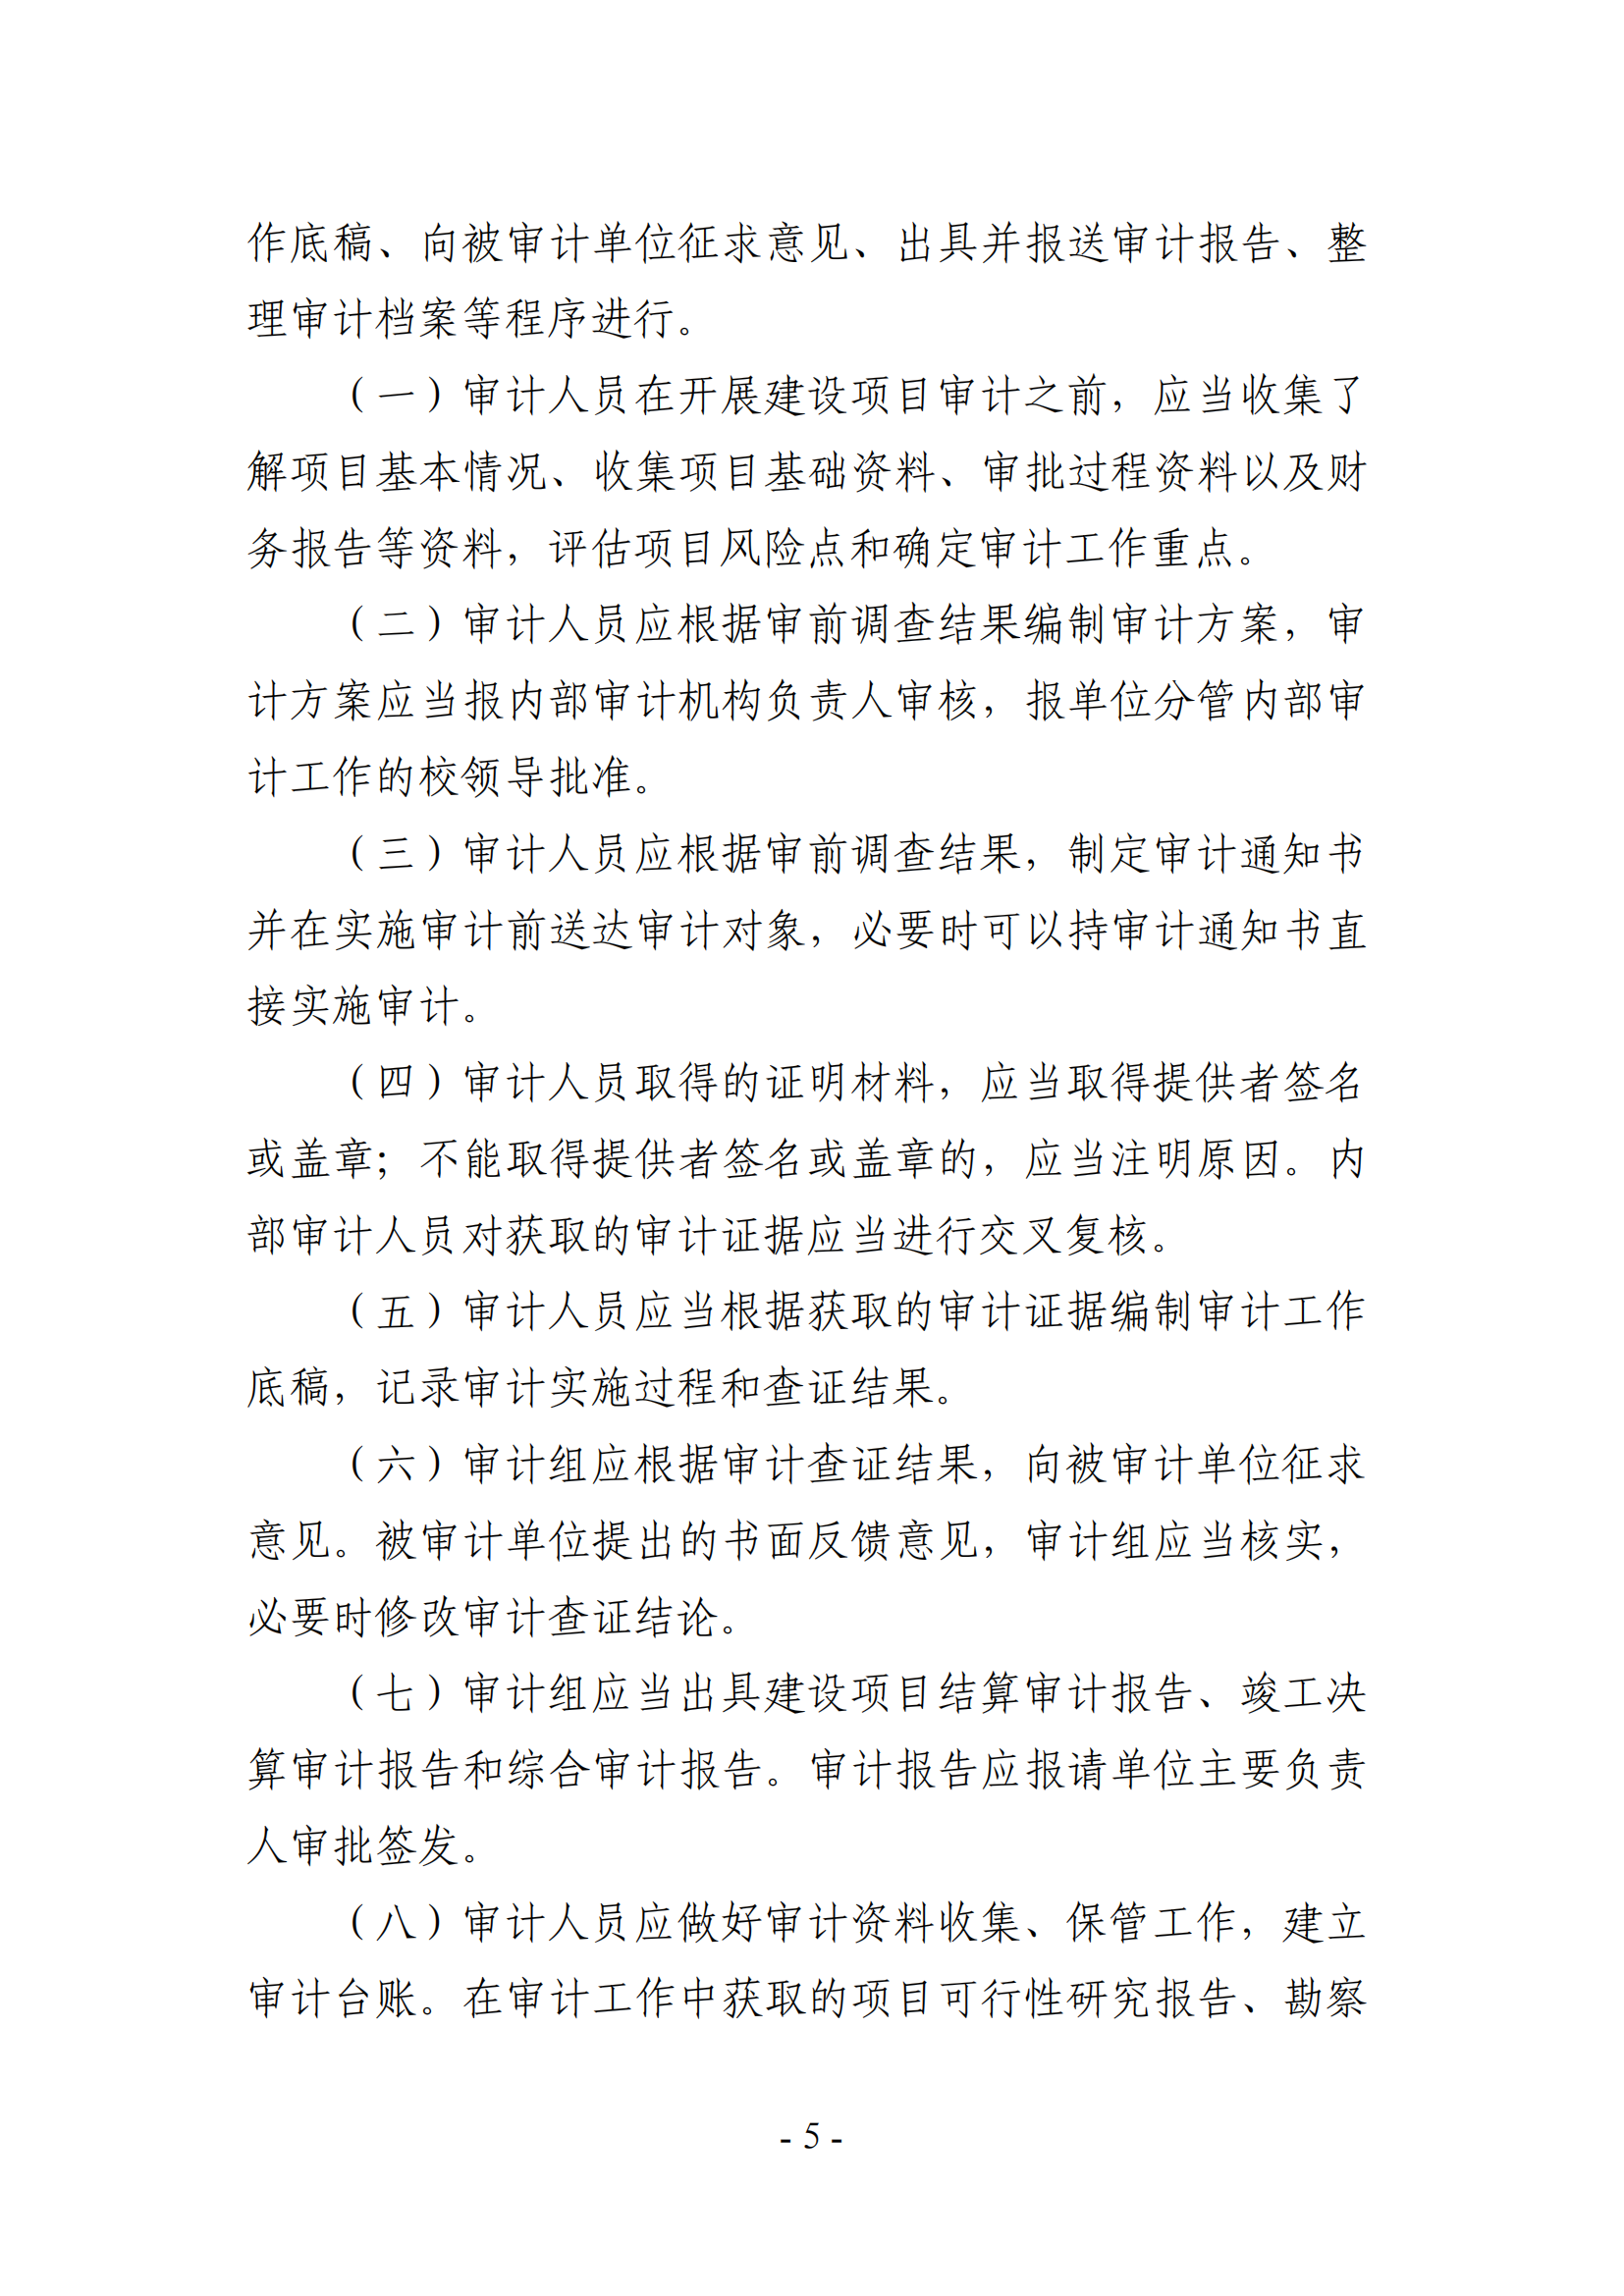 关于印发《湖南农业大学基建、修缮工程项目审计实施办法》的通知-正文_04.png